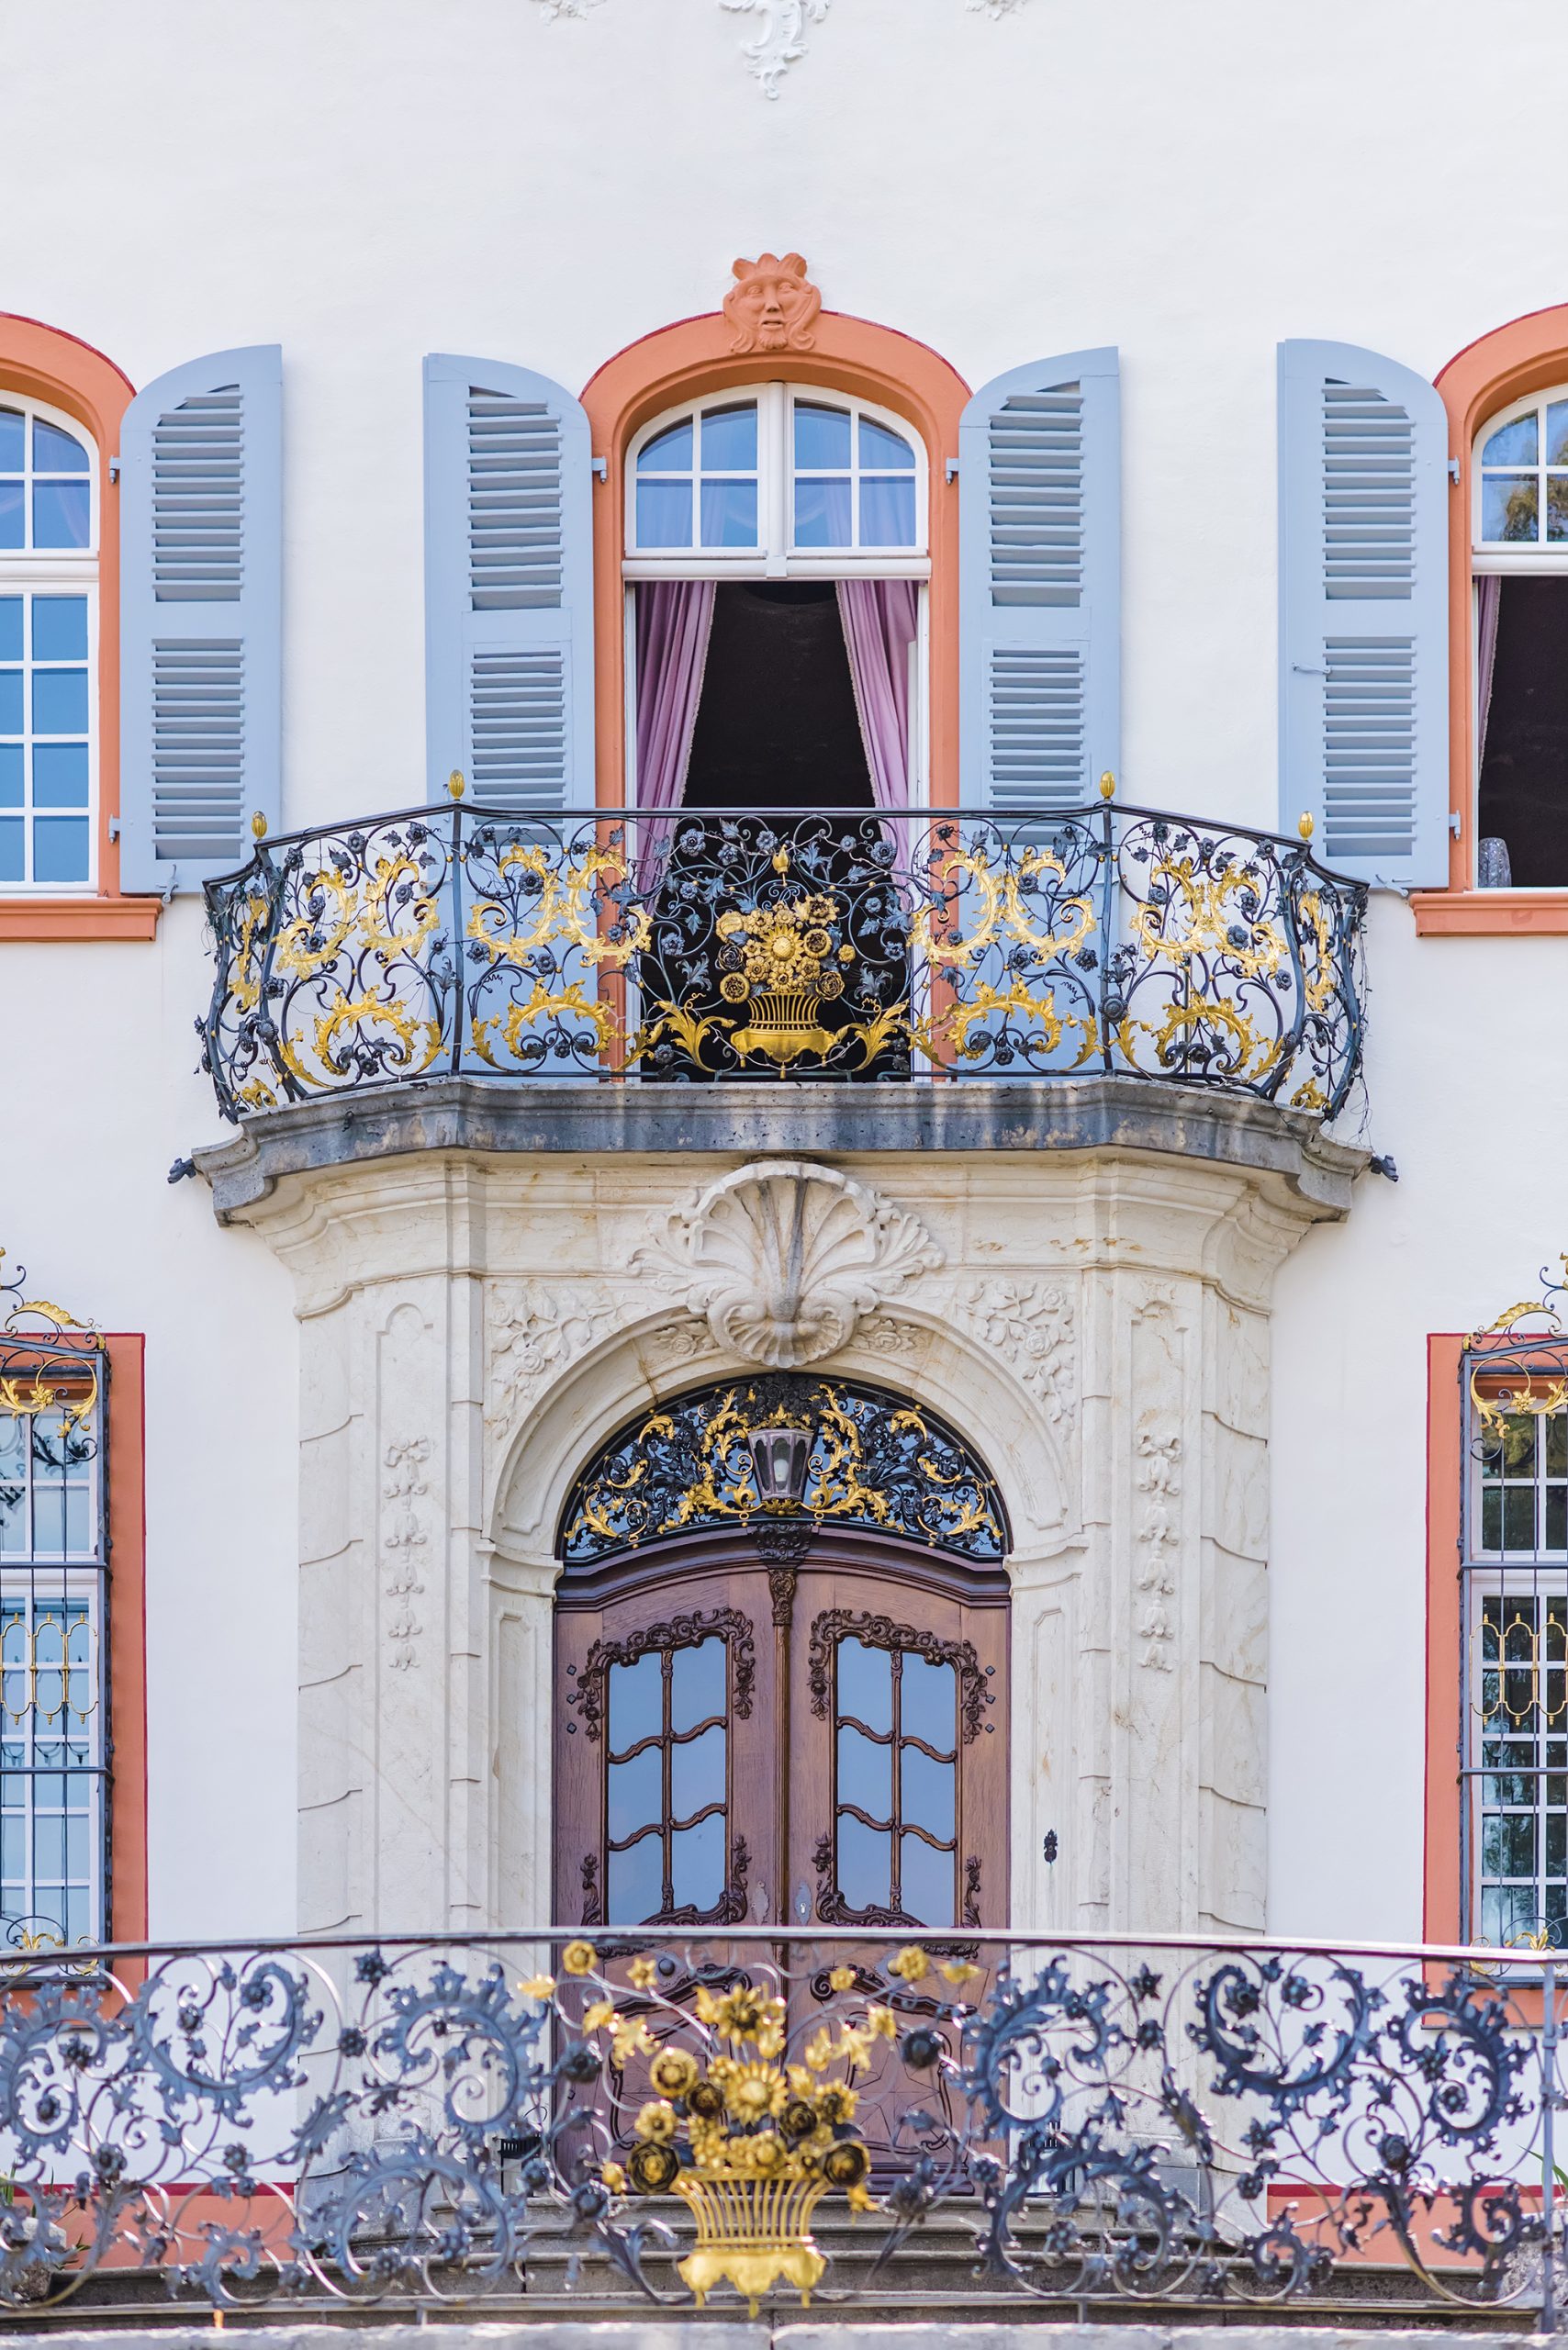 Ein Detailfoto der Fassade des Schlosses Burgeln in Schliengen, mit besonderem Fokus auf der oberen Balkon mit Geländern und Fenstern.